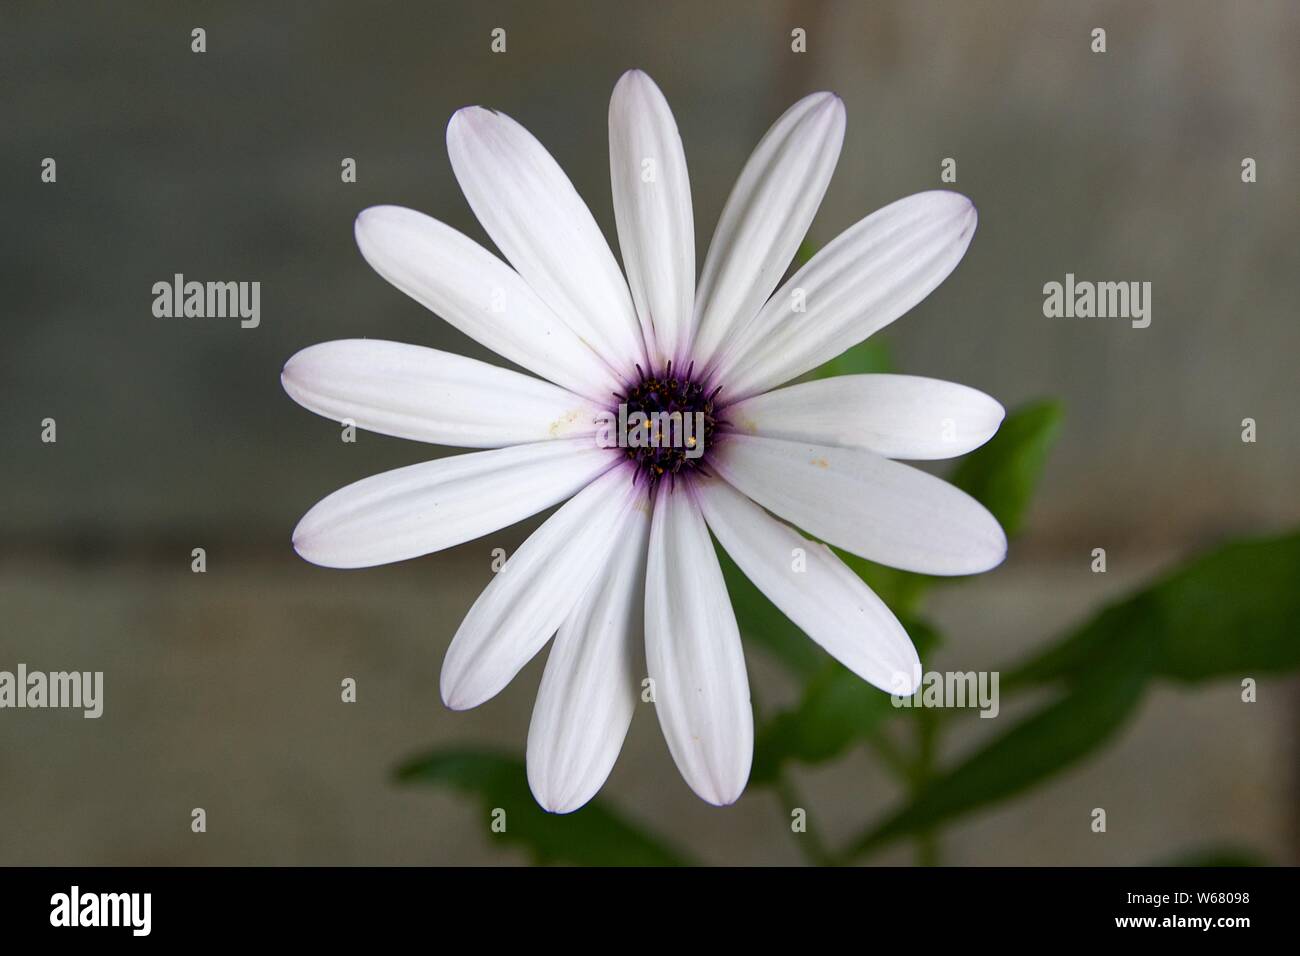 Acercamiento de una flor blanca flor Margarita plantada en una maceta. Vista de polen en los estambres y pétalos blancos. Fondo difuminado. Foto de stock